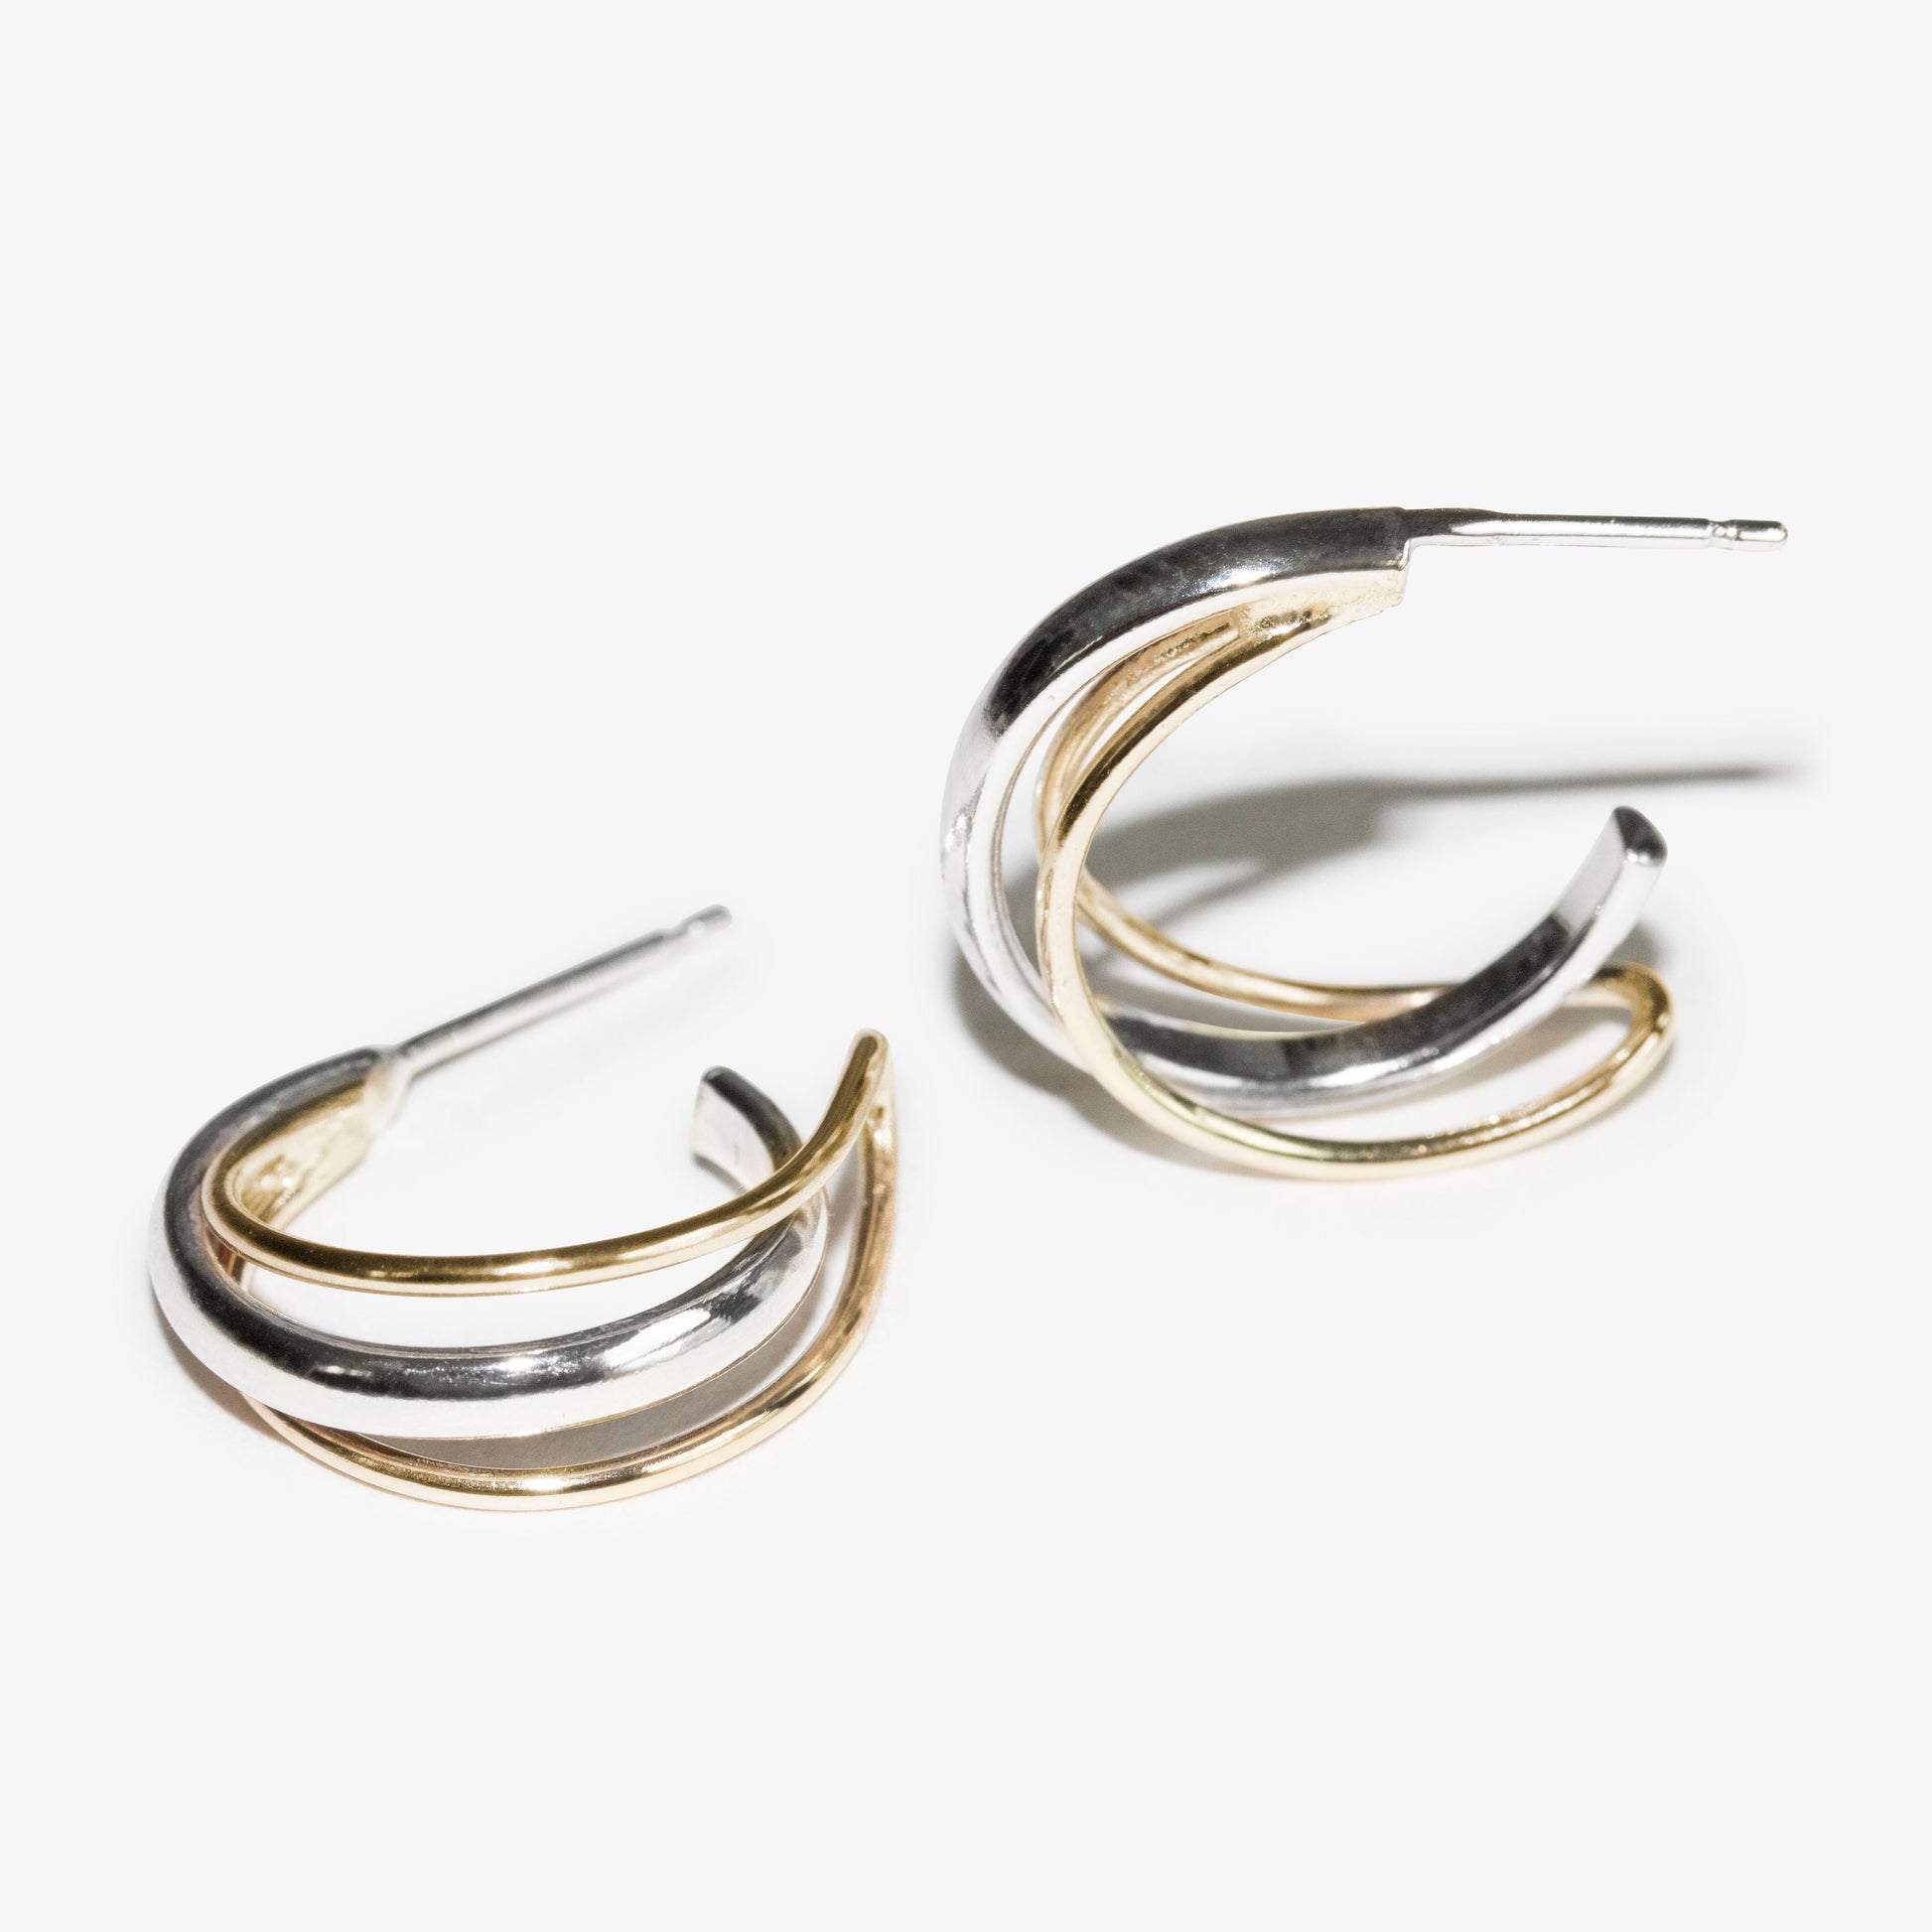 Orbit 9kt gold and sterling silver hoop earrings by Skomer Studio